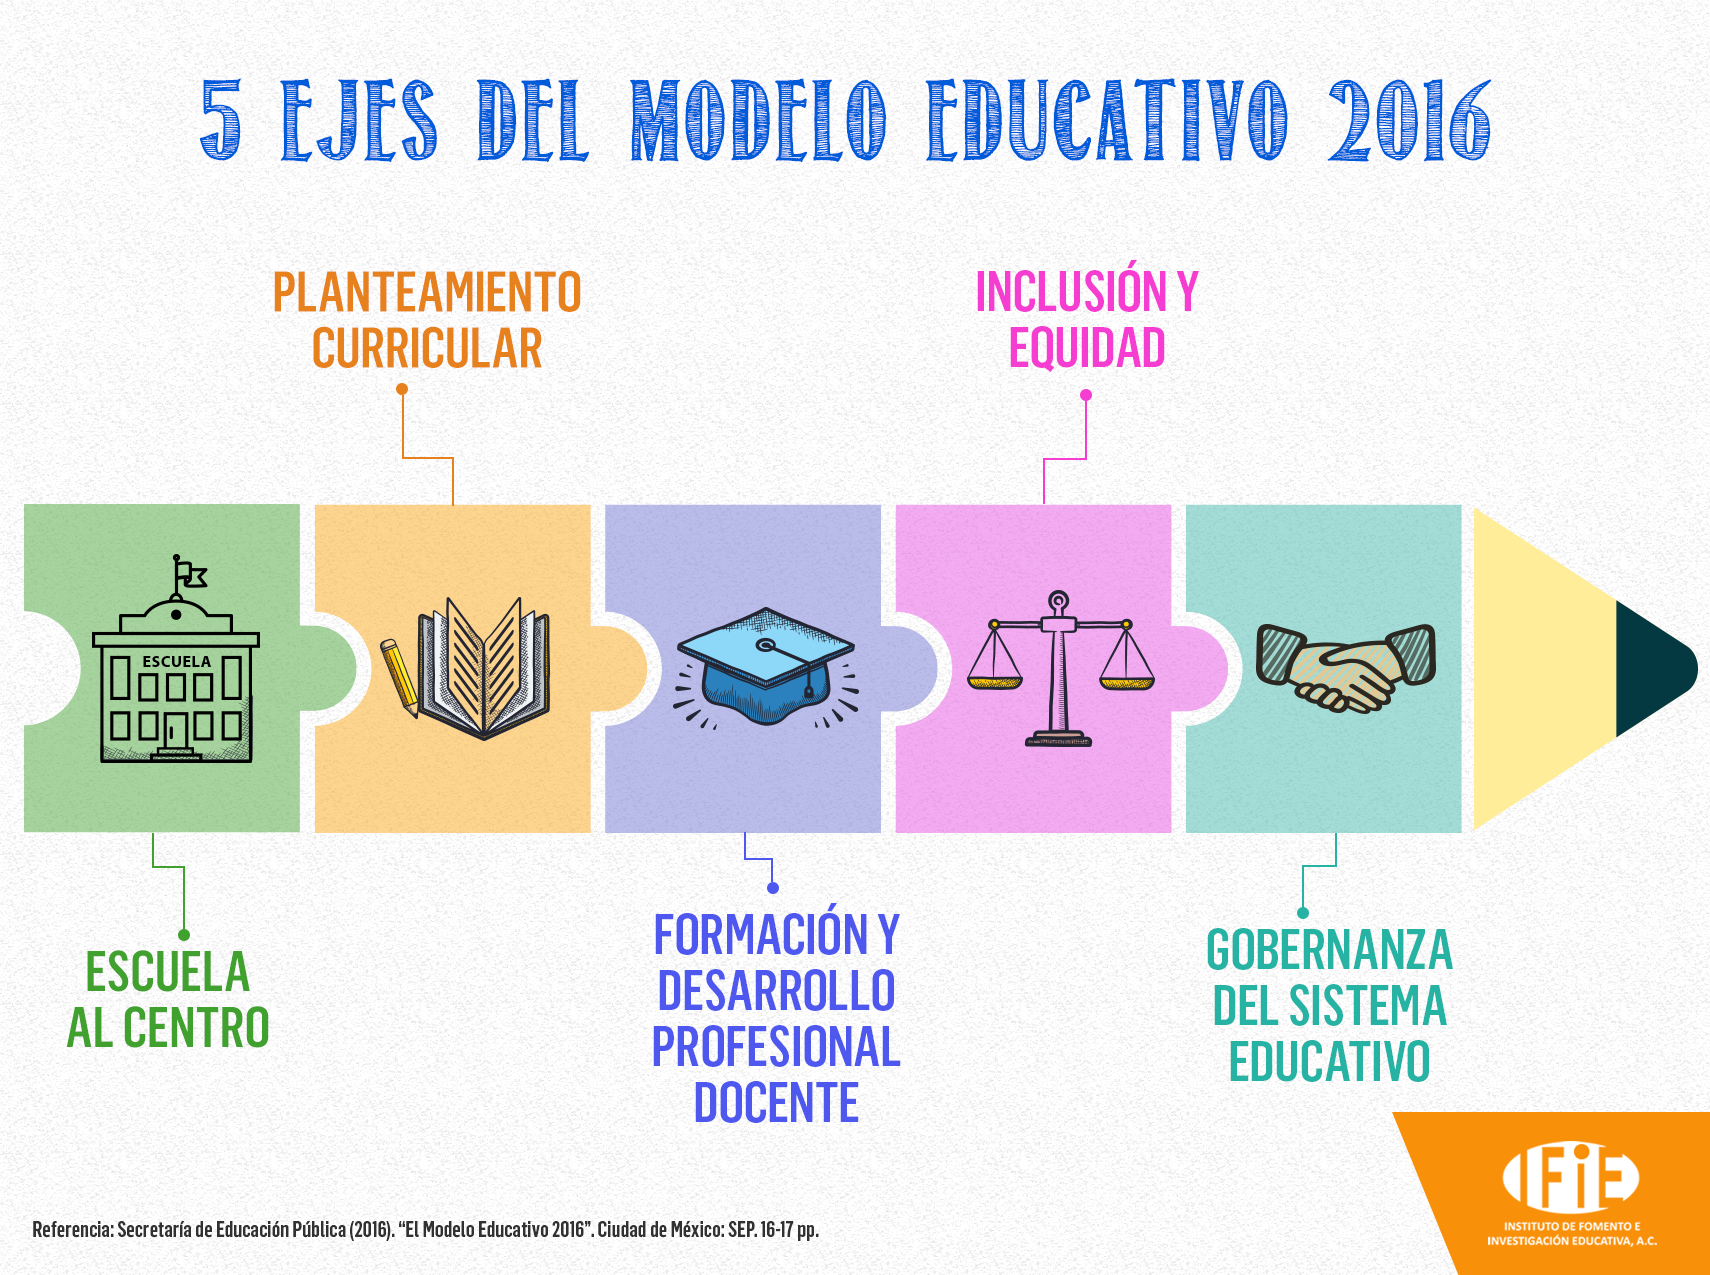 MODELO EDUCATIVO DE MEXICO | Course